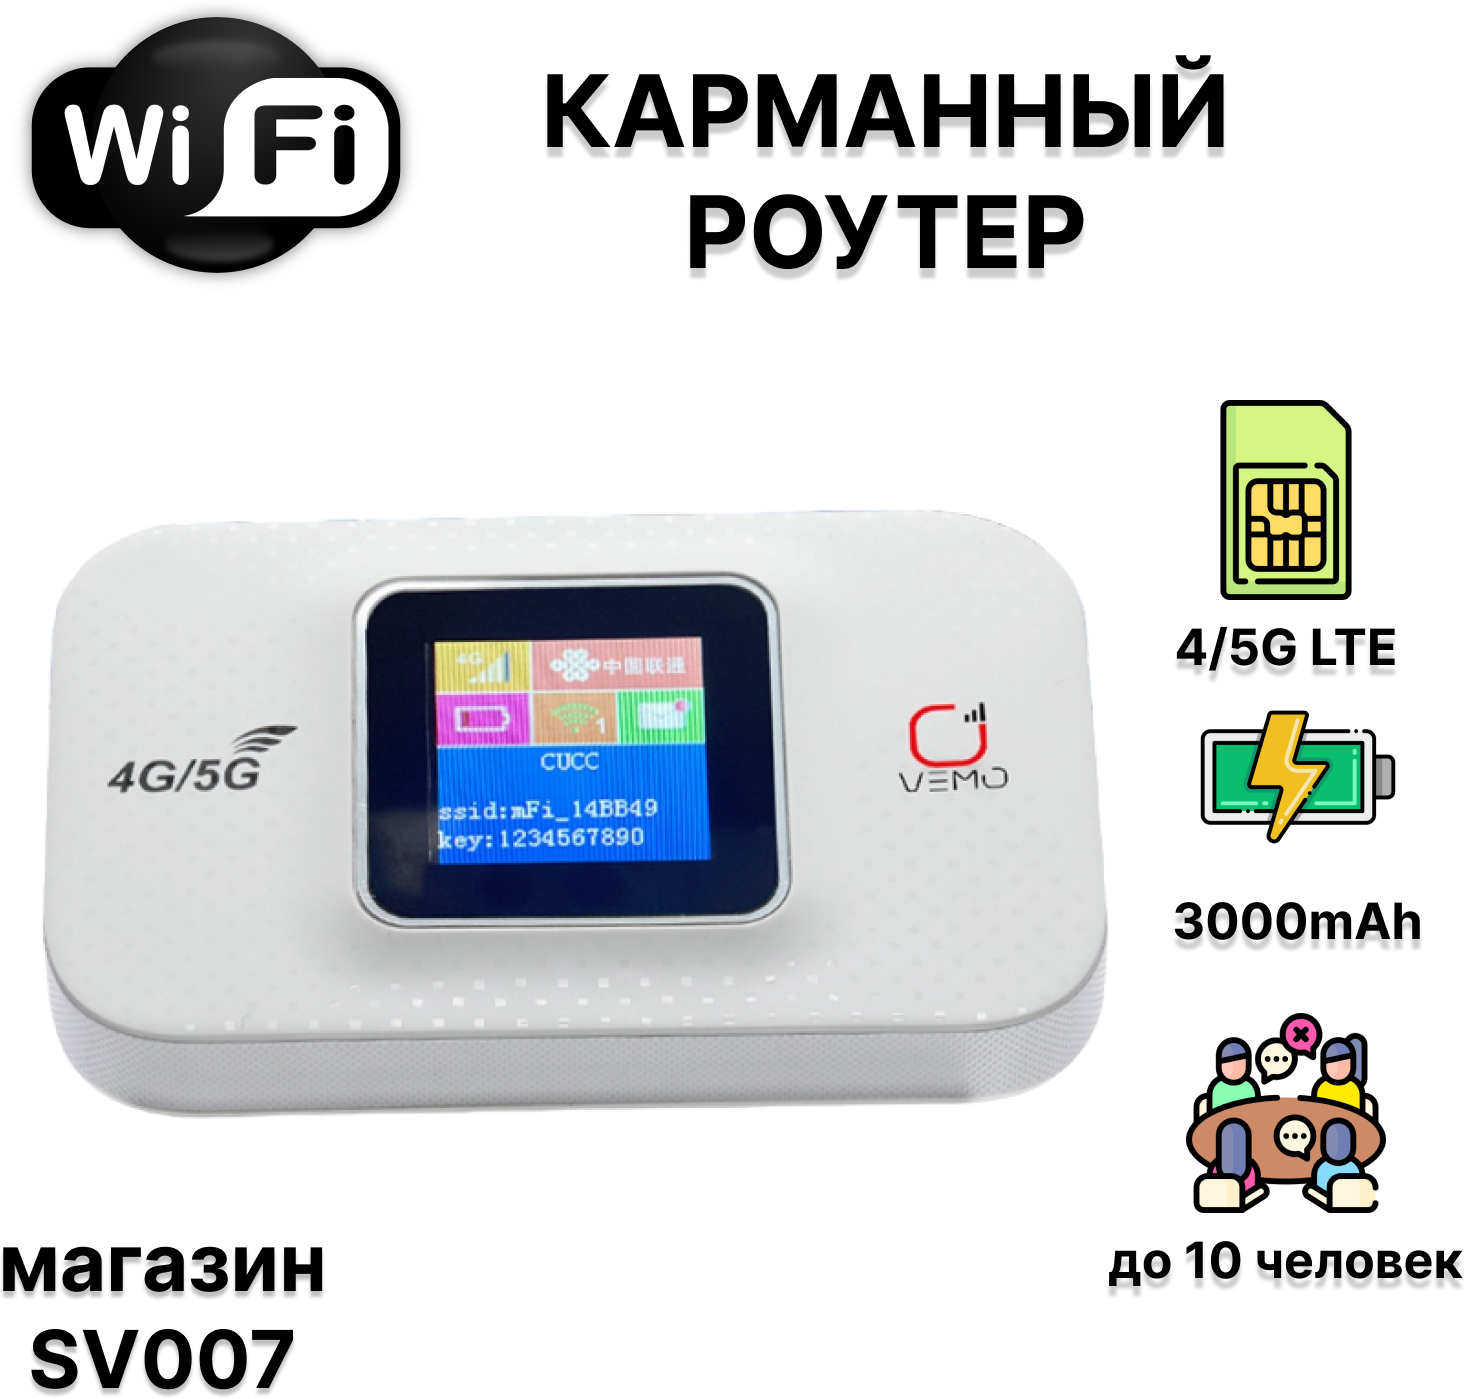 Wi Fi модем с сим картой для раздачи интернета карманный переносной роутер с sim 4G/5G LTE встроенный аккумулятор 3000mAh